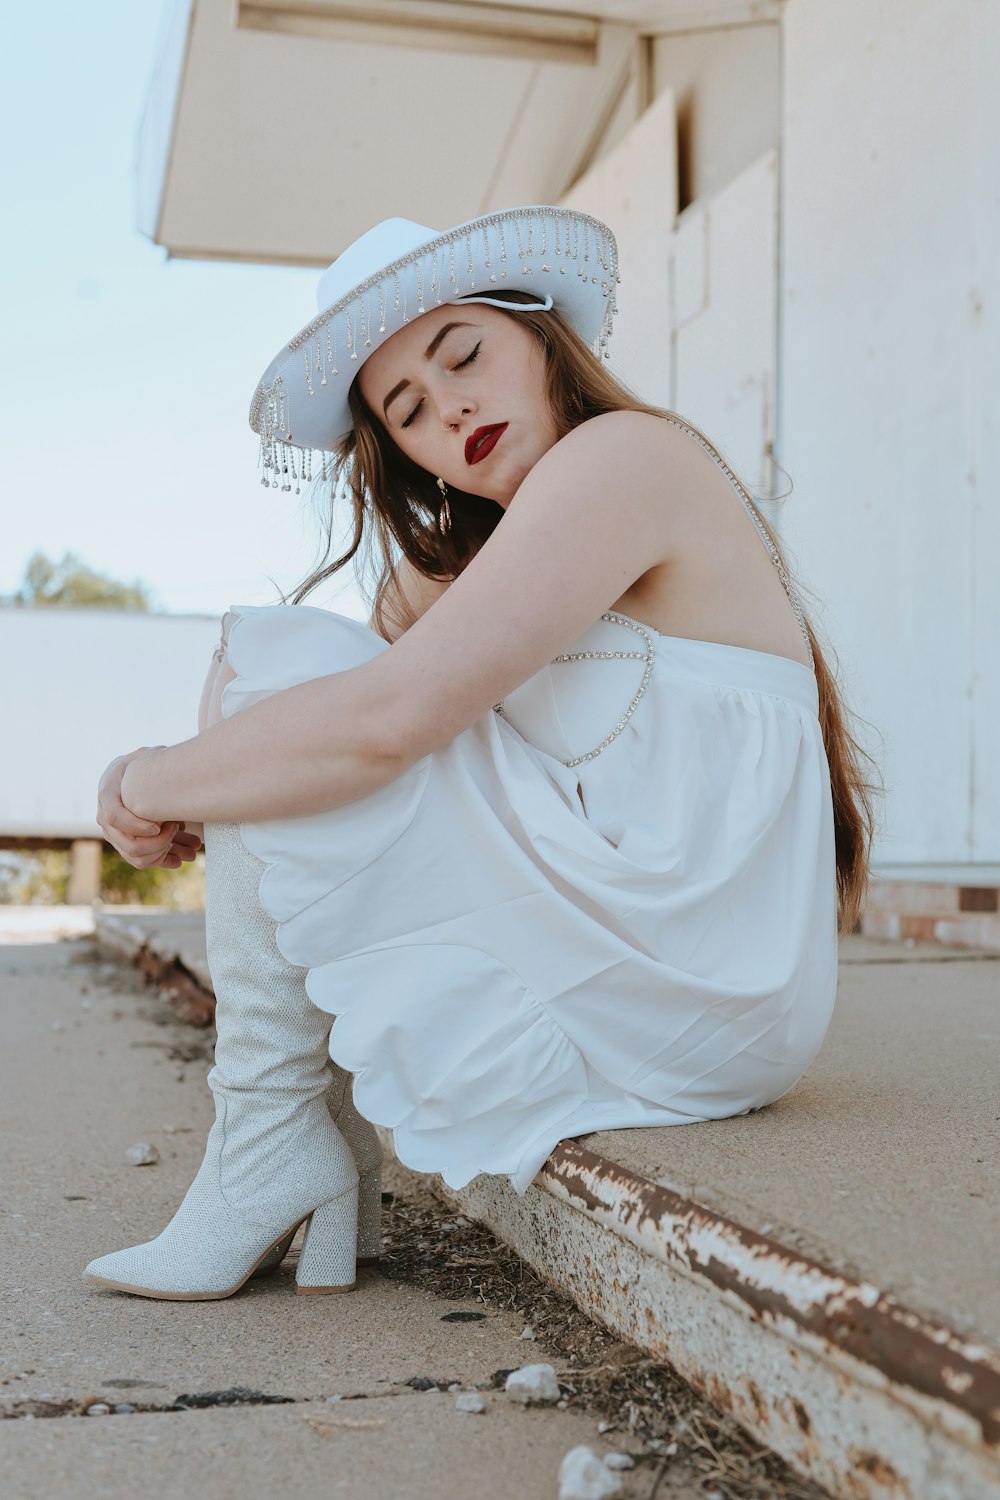 Una mujer con un vestido blanco y sombrero sentada en el suelo